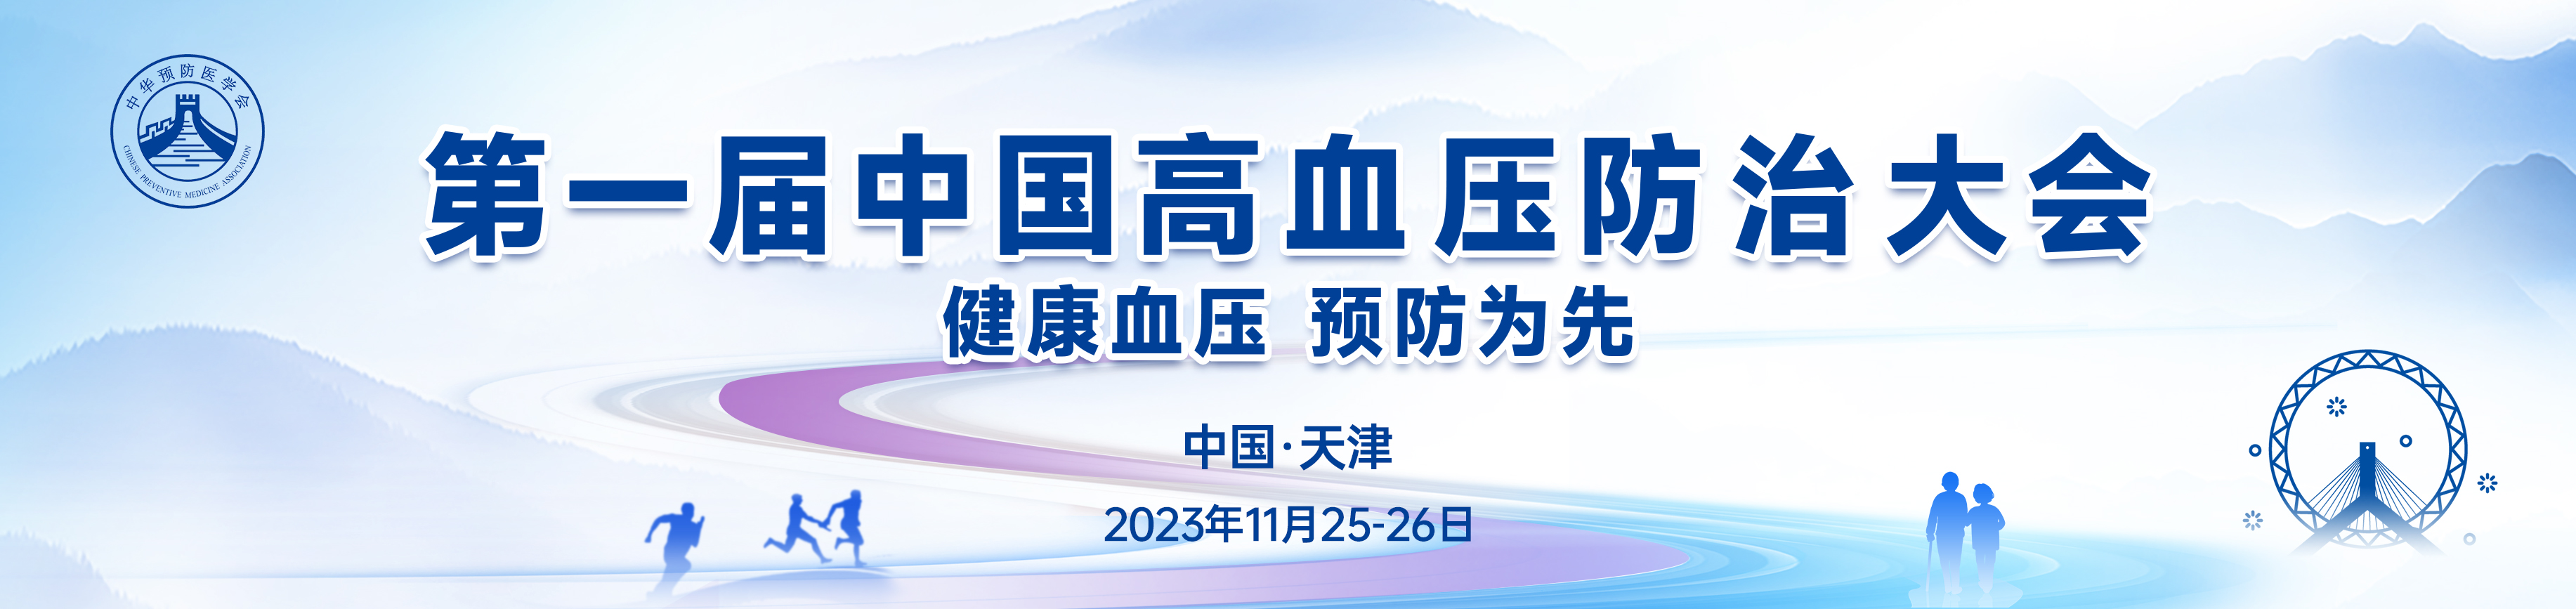 第一届中国高血压防治大会